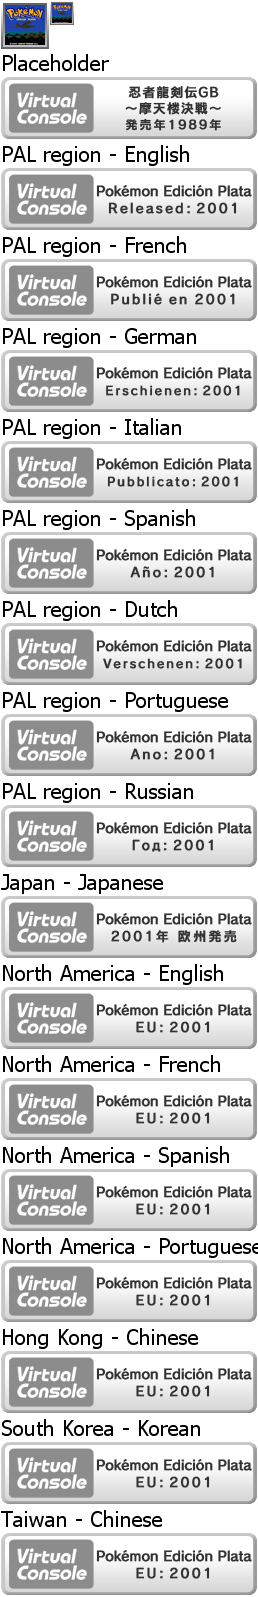 Virtual Console - Pokémon Edición Plata